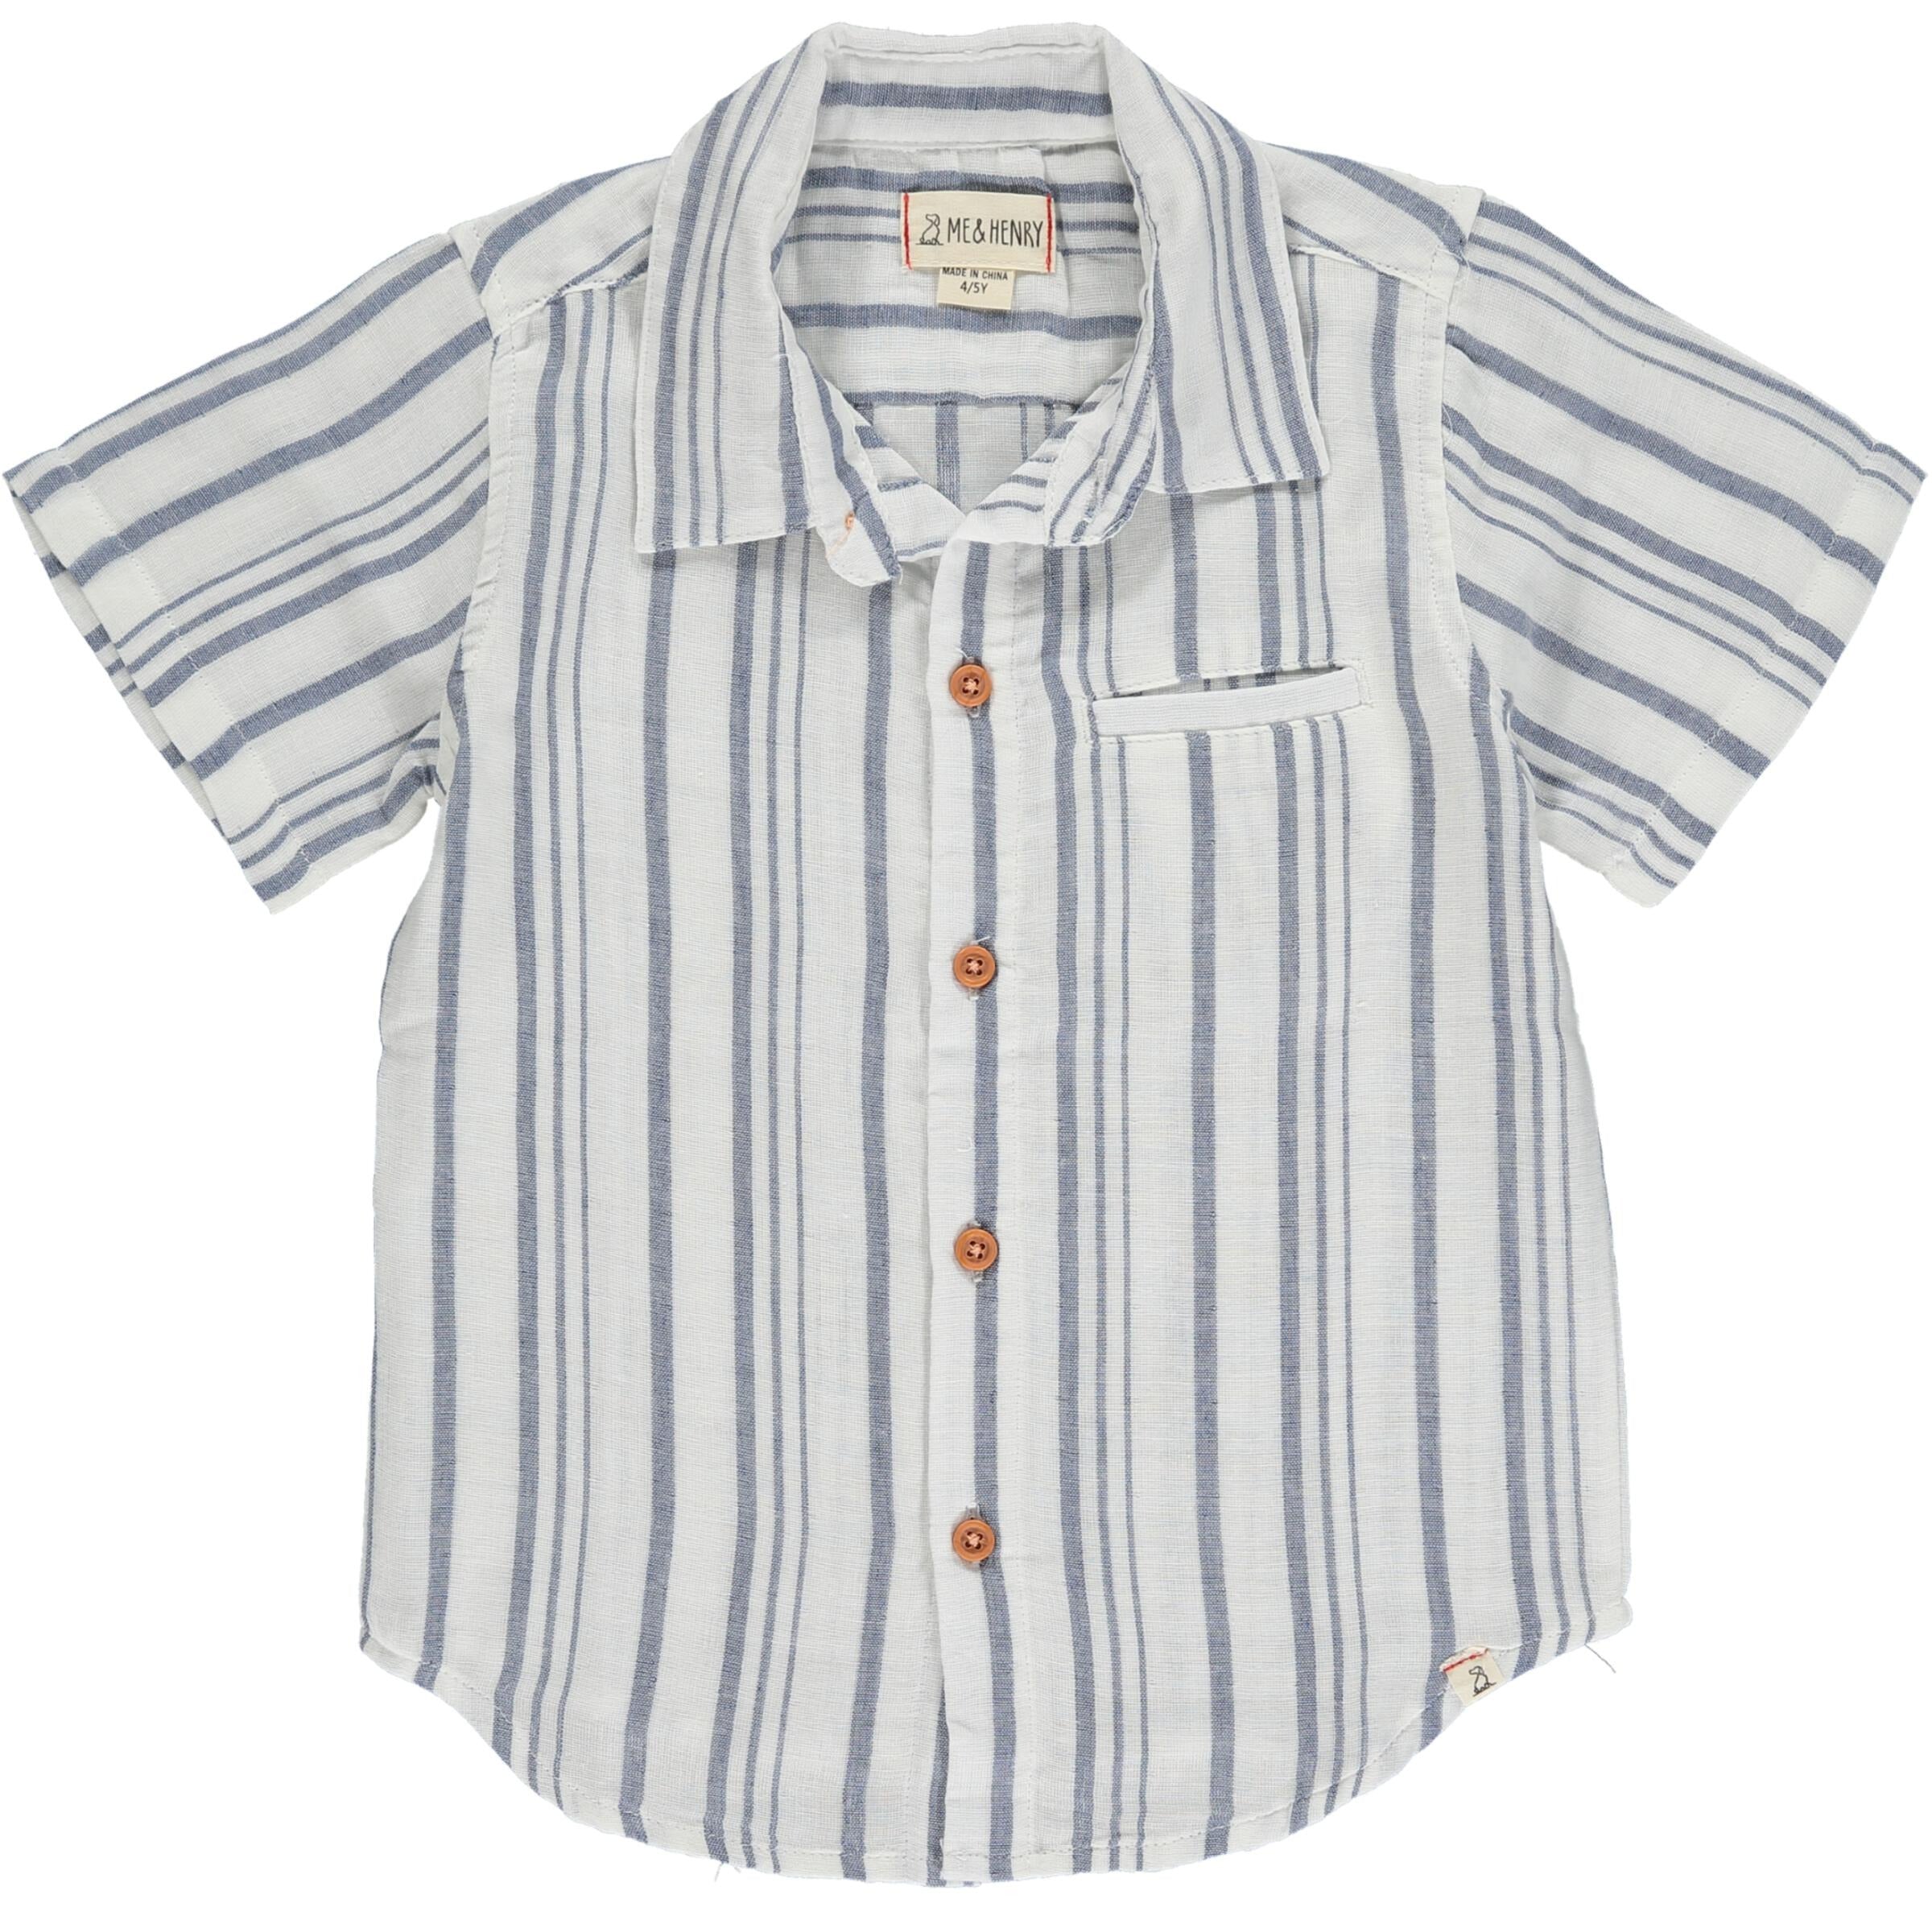 Newport Shirt - Blue/White Stripe